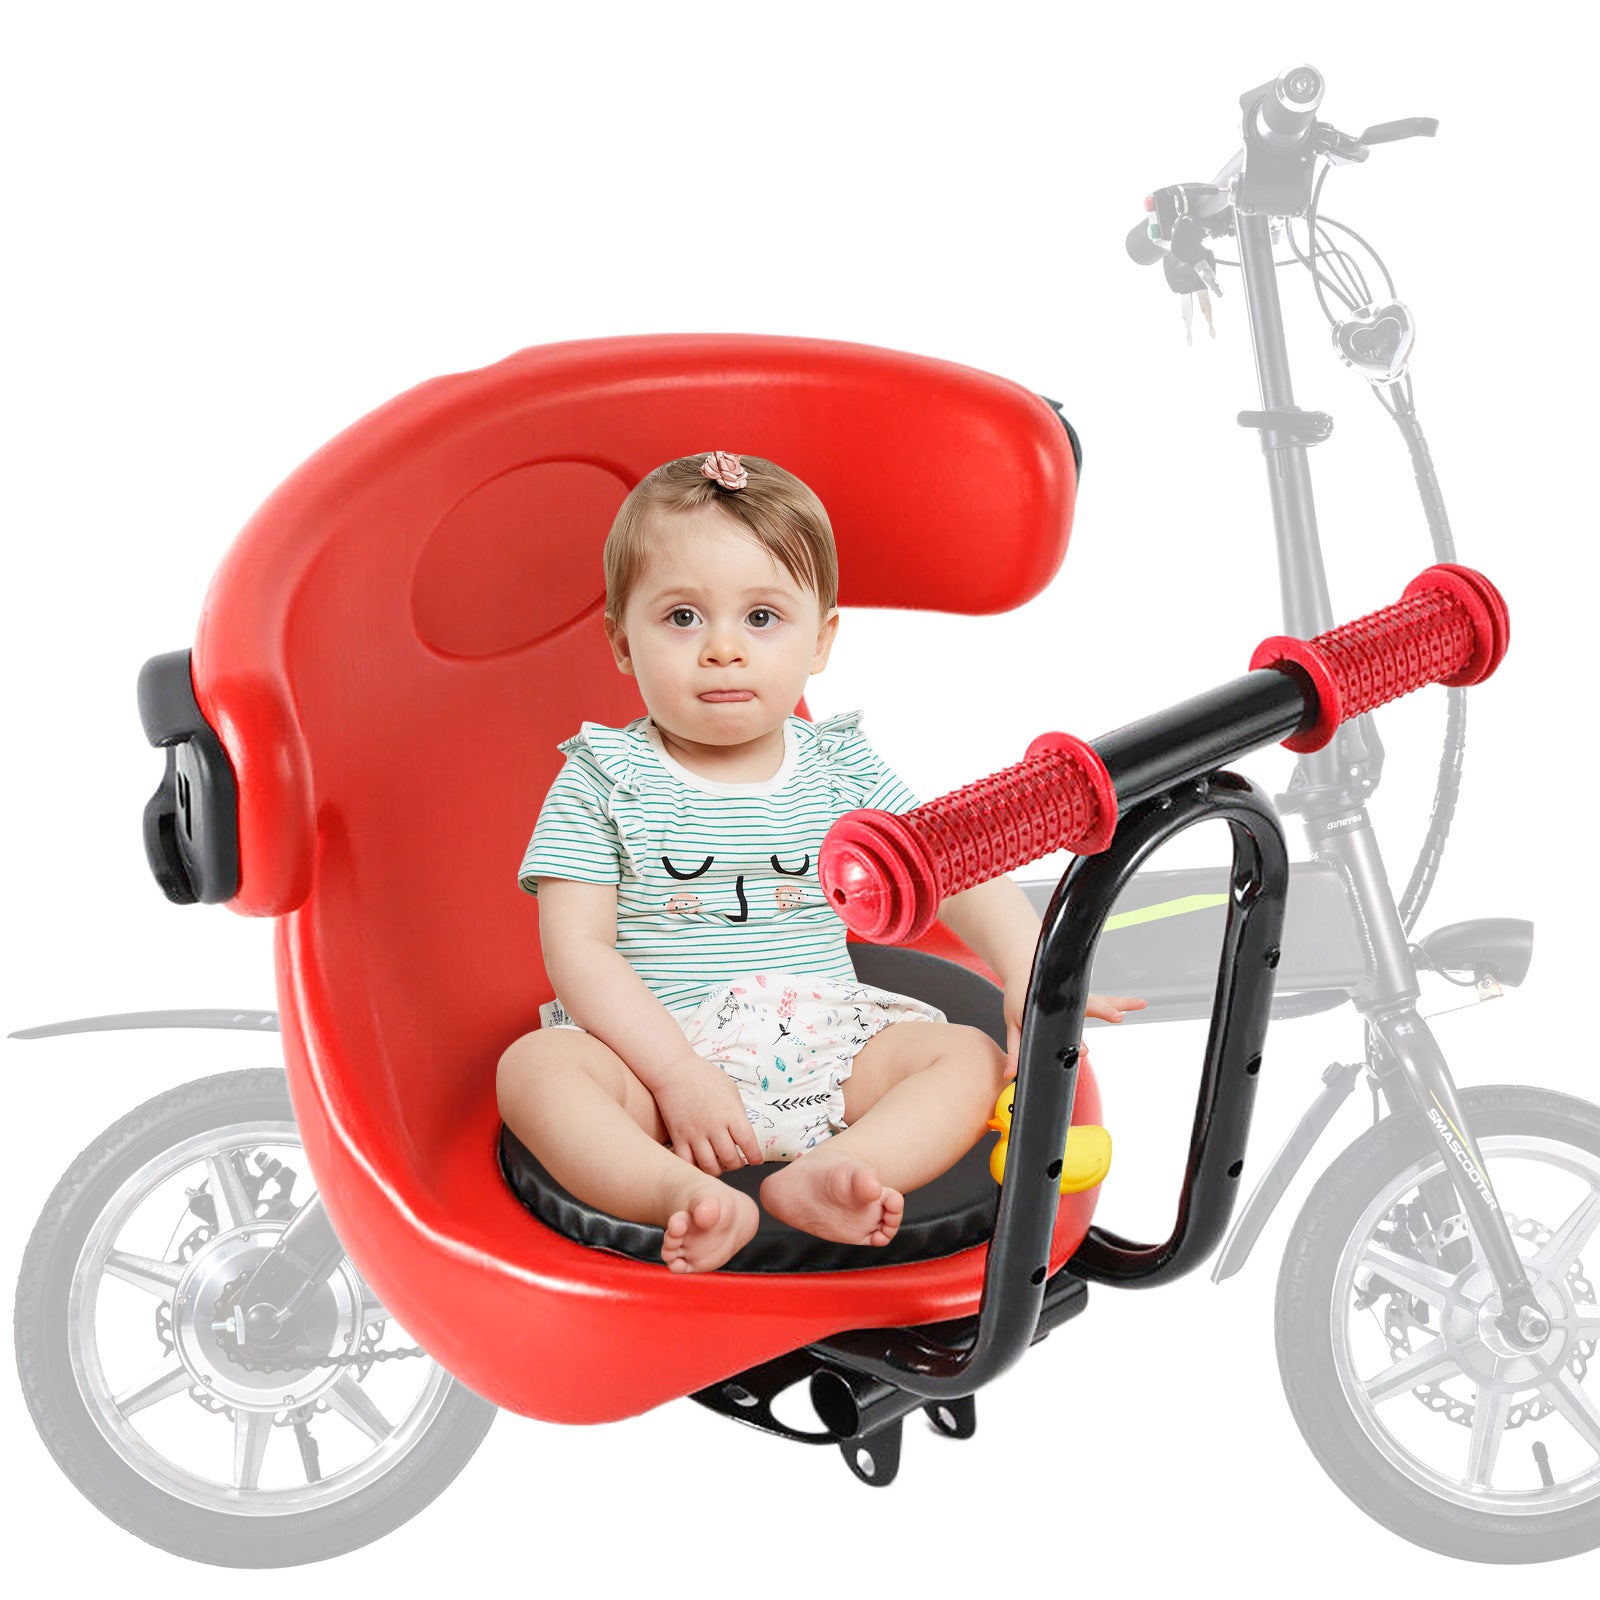 Sedile anteriore della bicicletta per bambini, sicuro e stabile, con poggiapiedi.